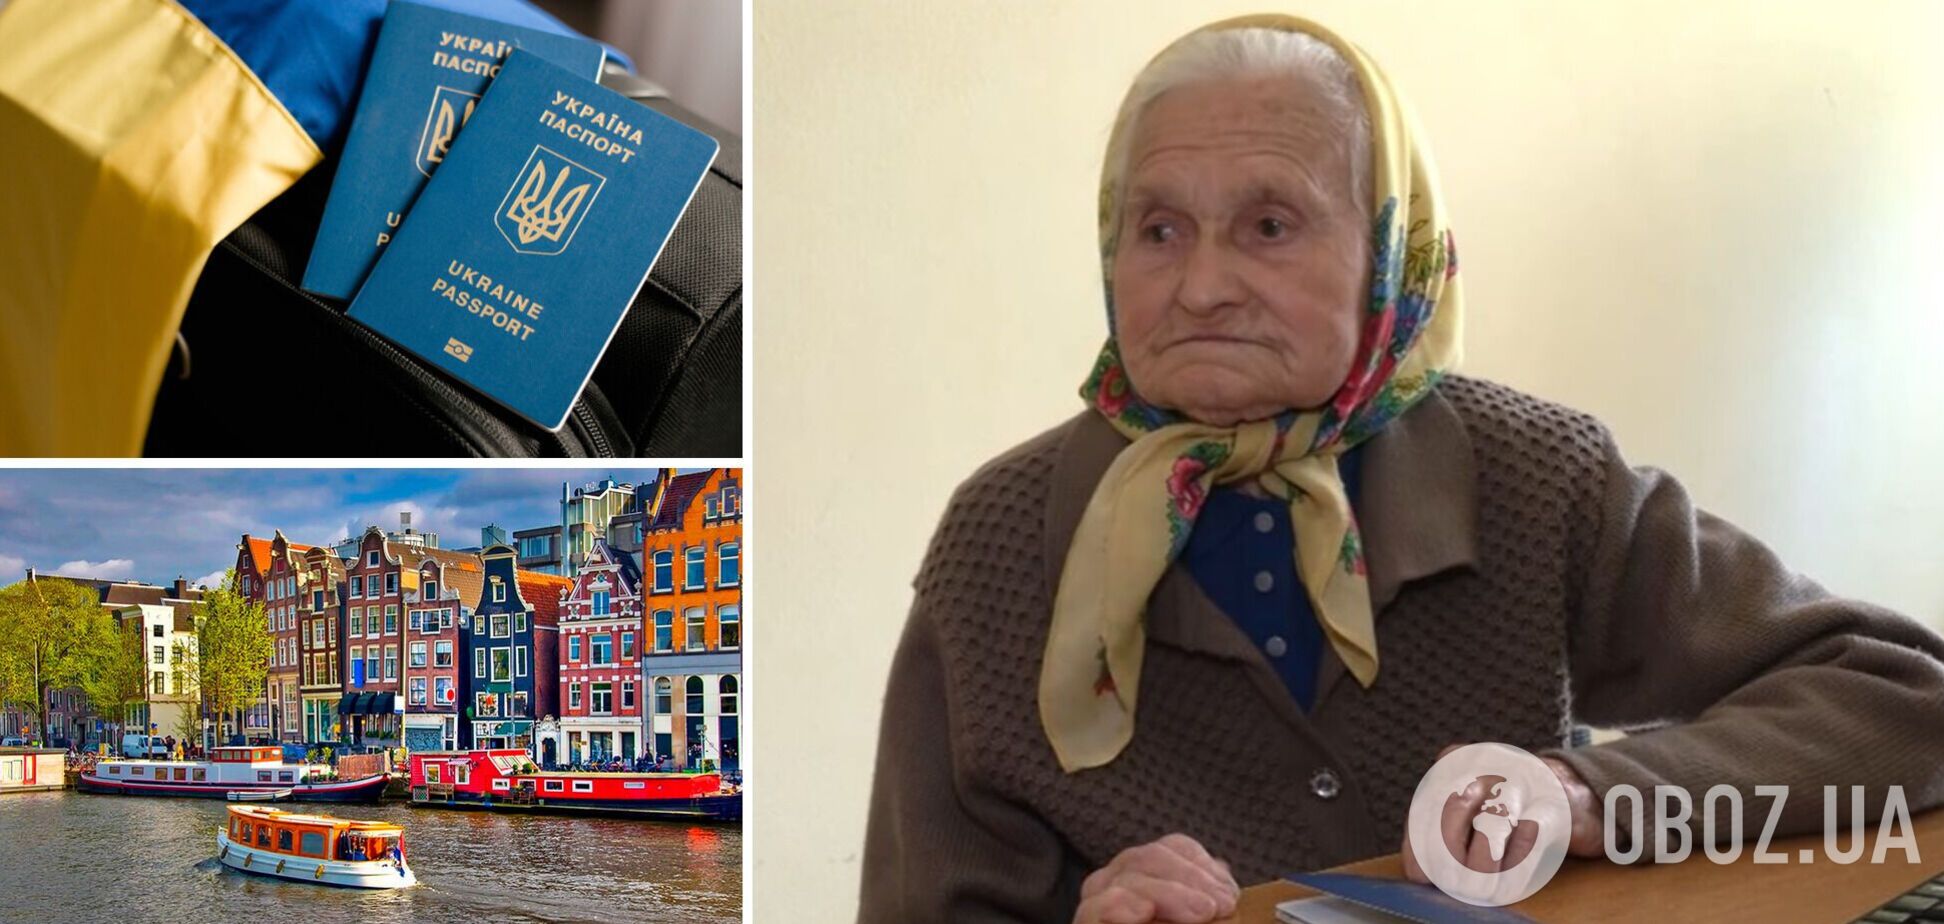 Колишня зв’язкова УПА в 96 років отримала закордонний паспорт, щоб побачитися з онукою в Амстердамі. Відео